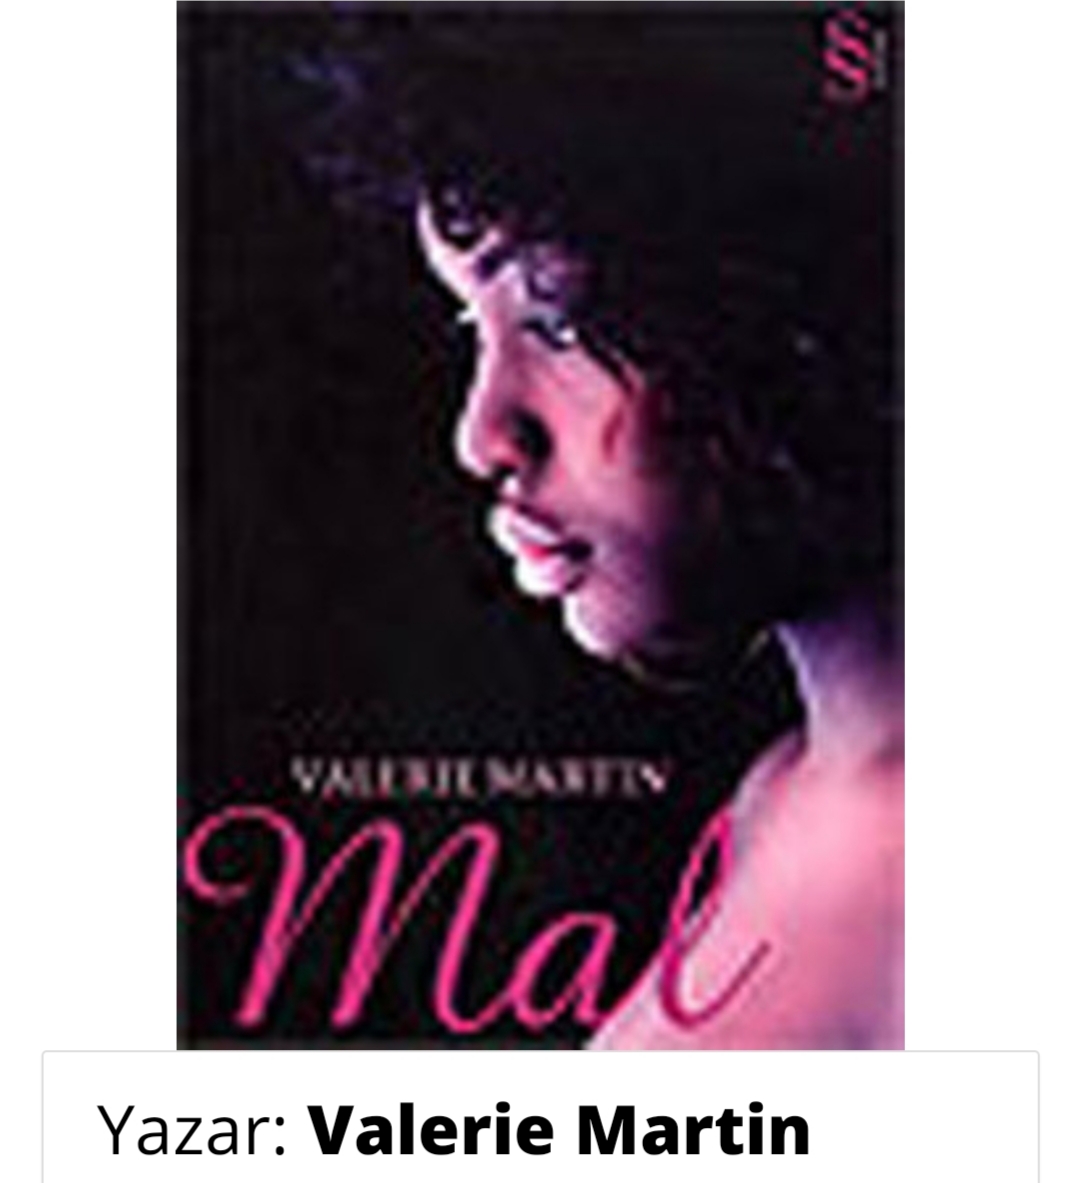 Valerie Martin "Mal"